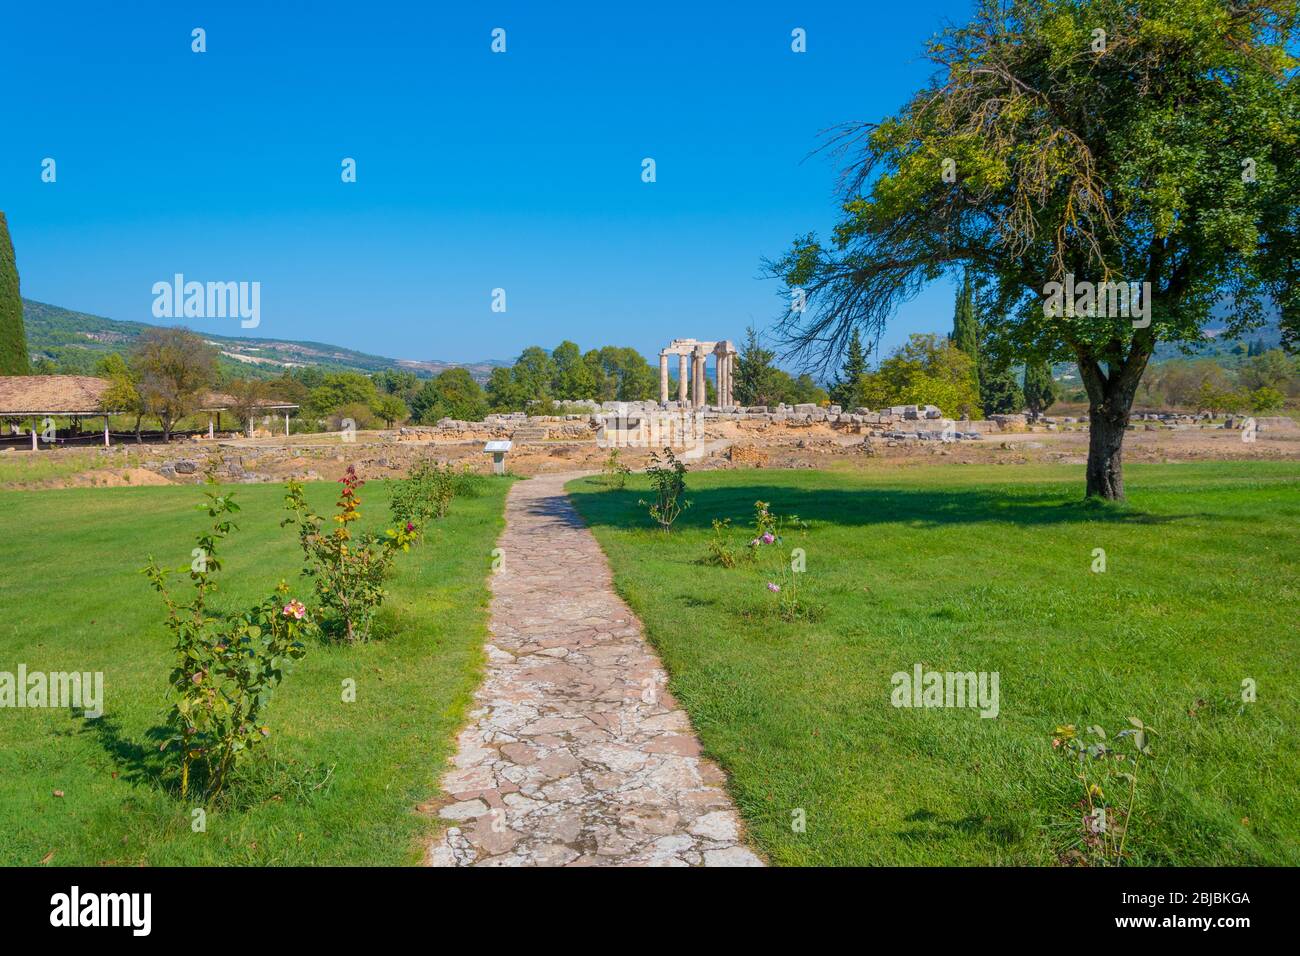 Tempio di Zeus nel sito archeologico di Nemea in Grecia. Fu costruito intorno al 330 a.C. per servire le esigenze del festival e dei giochi Nemiani. Foto Stock